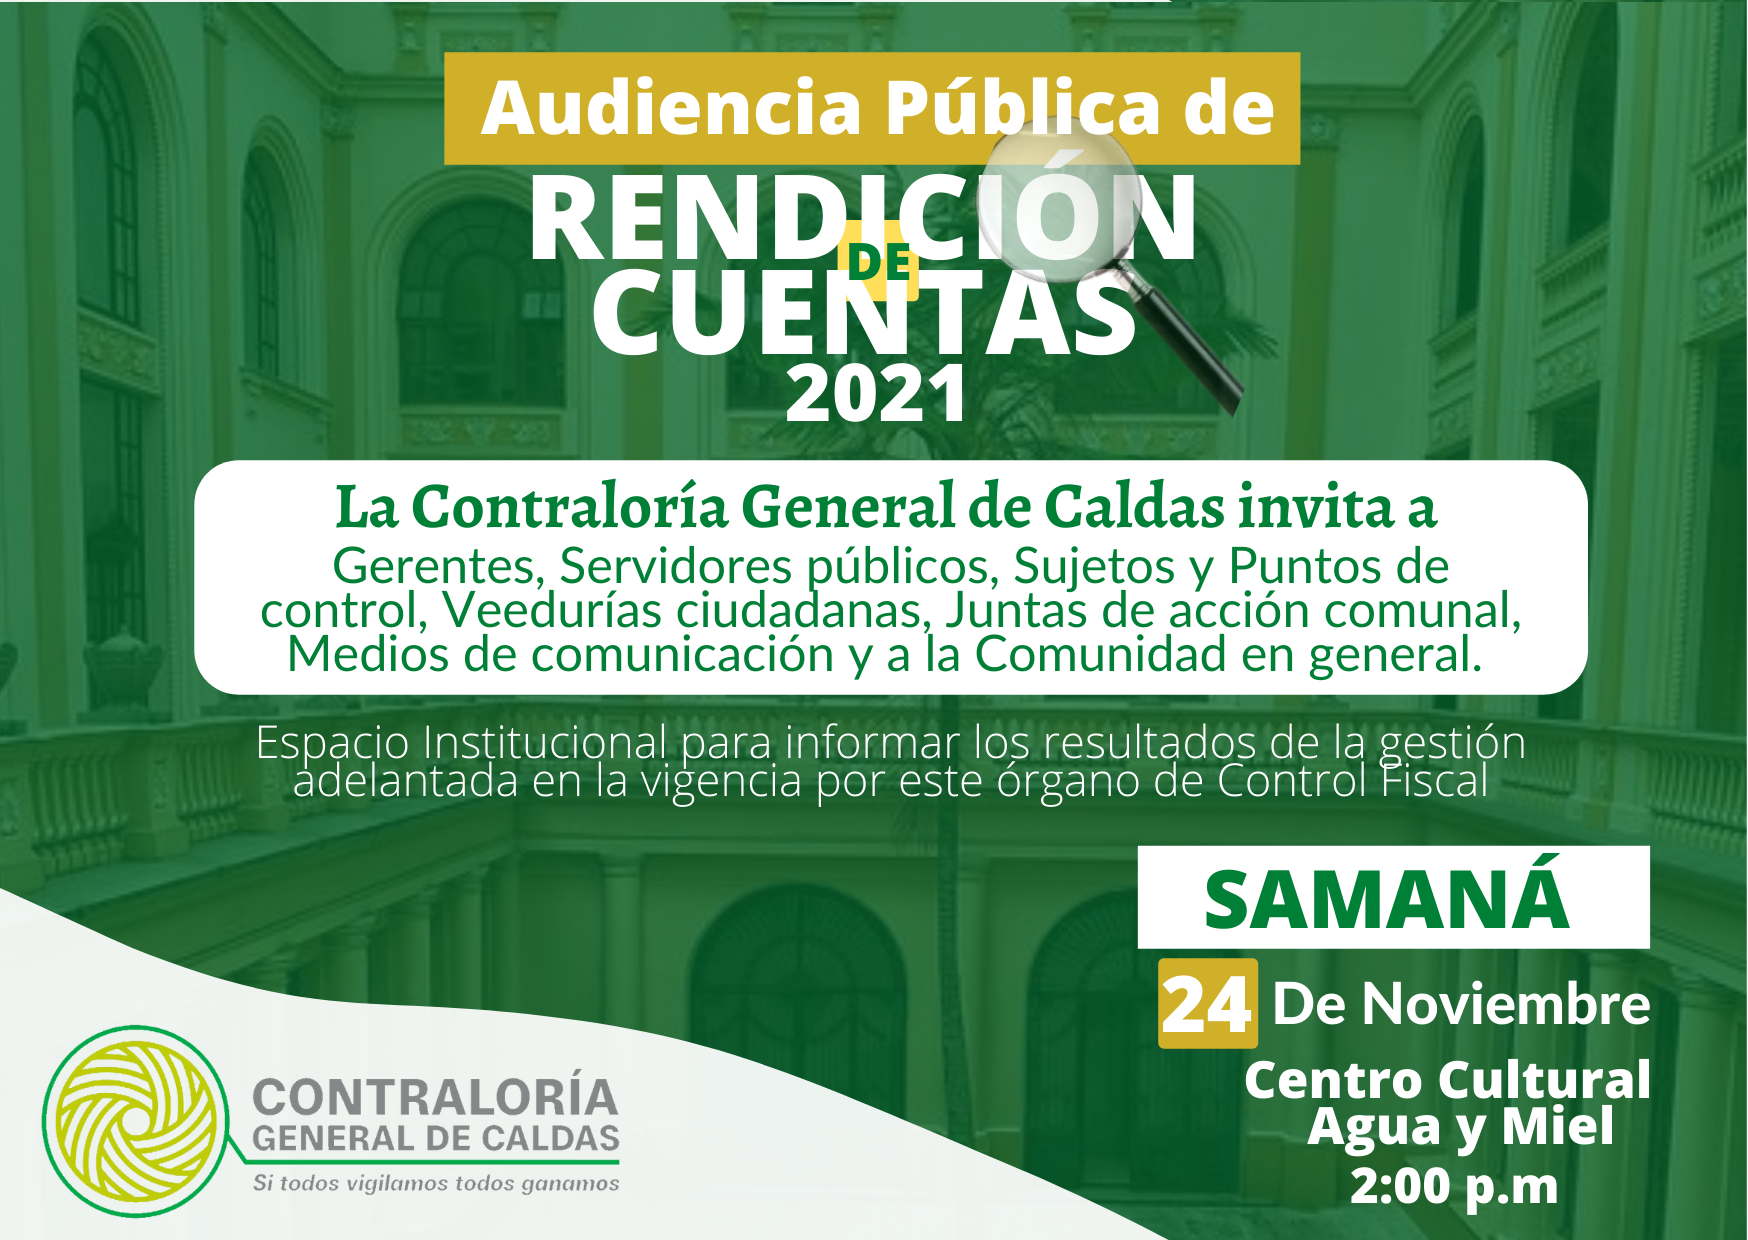 La Contraloría General de Caldas invita a la Audiencia Pública de Rendición de cuentas de la Vigencia 2021 que se realizará el día 24 de Noviembre, en el Municipio de Samaná